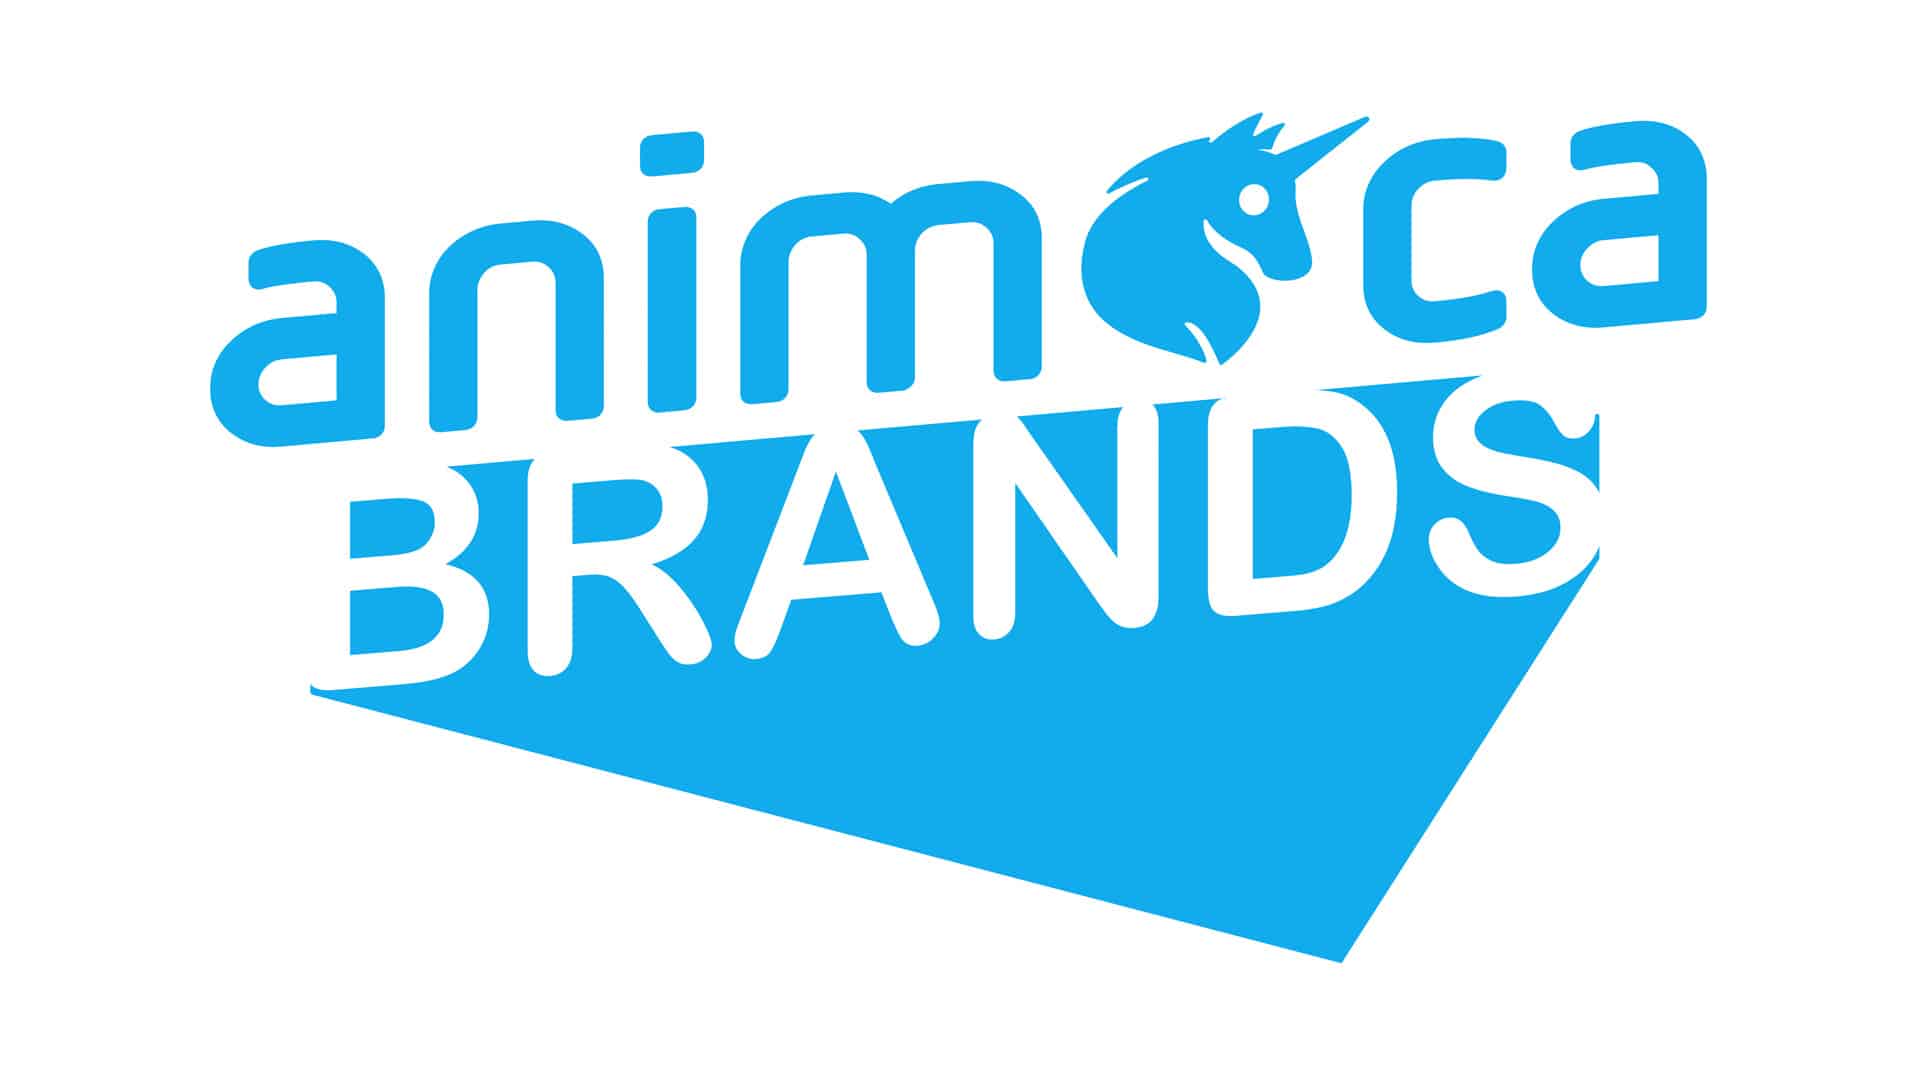 Animoca Brands raises US,888,888 based on valuation of US billion